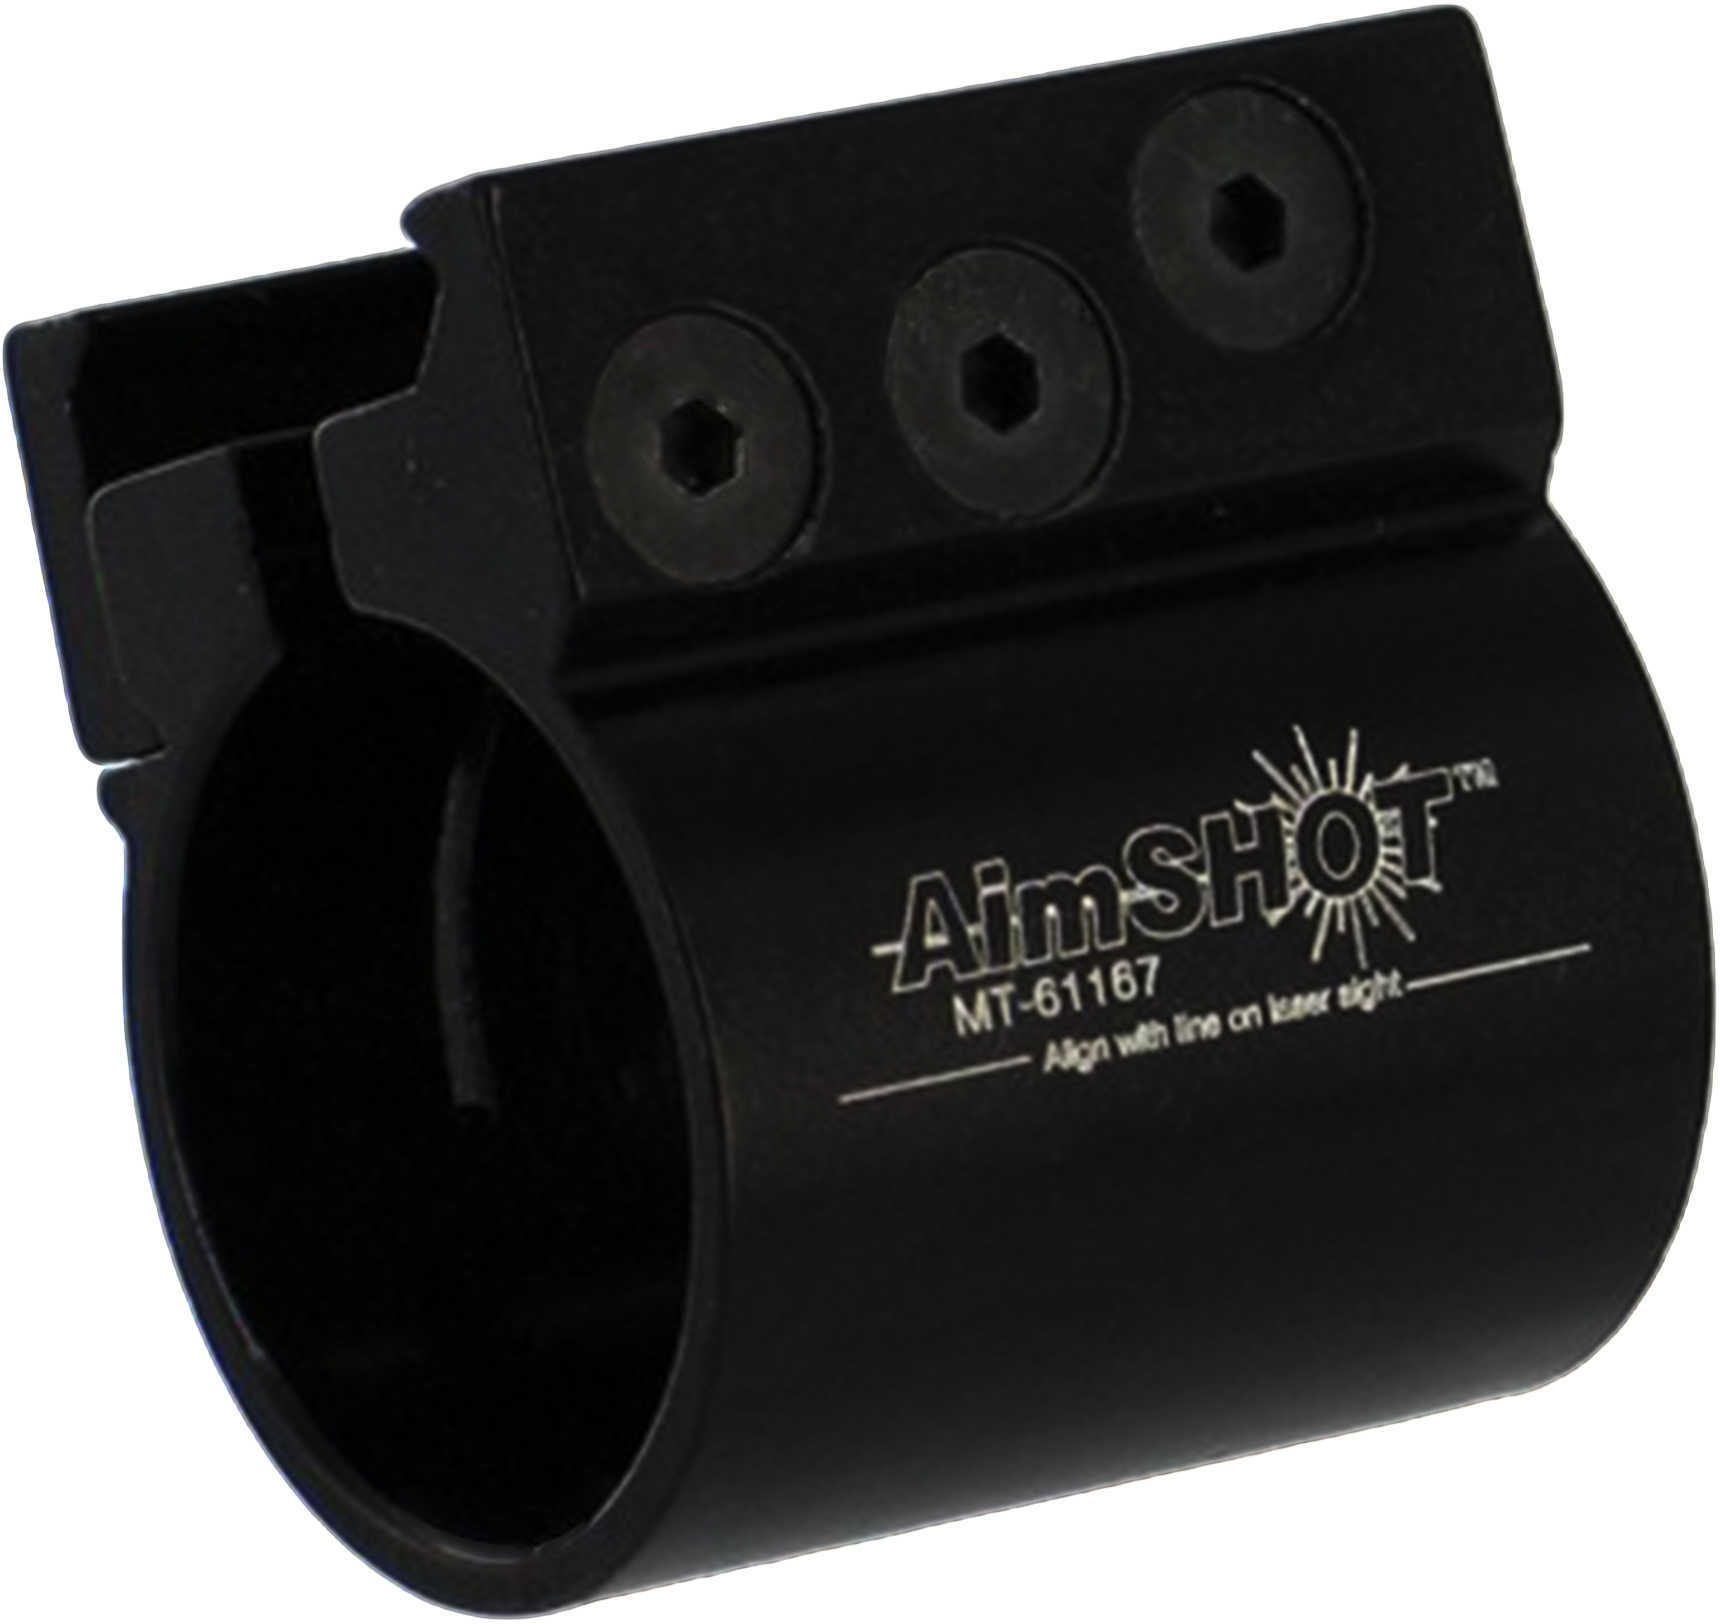 Aimshot Mt61167 Laser/Light Rail Mount , 7/8" Or 1" Diameter